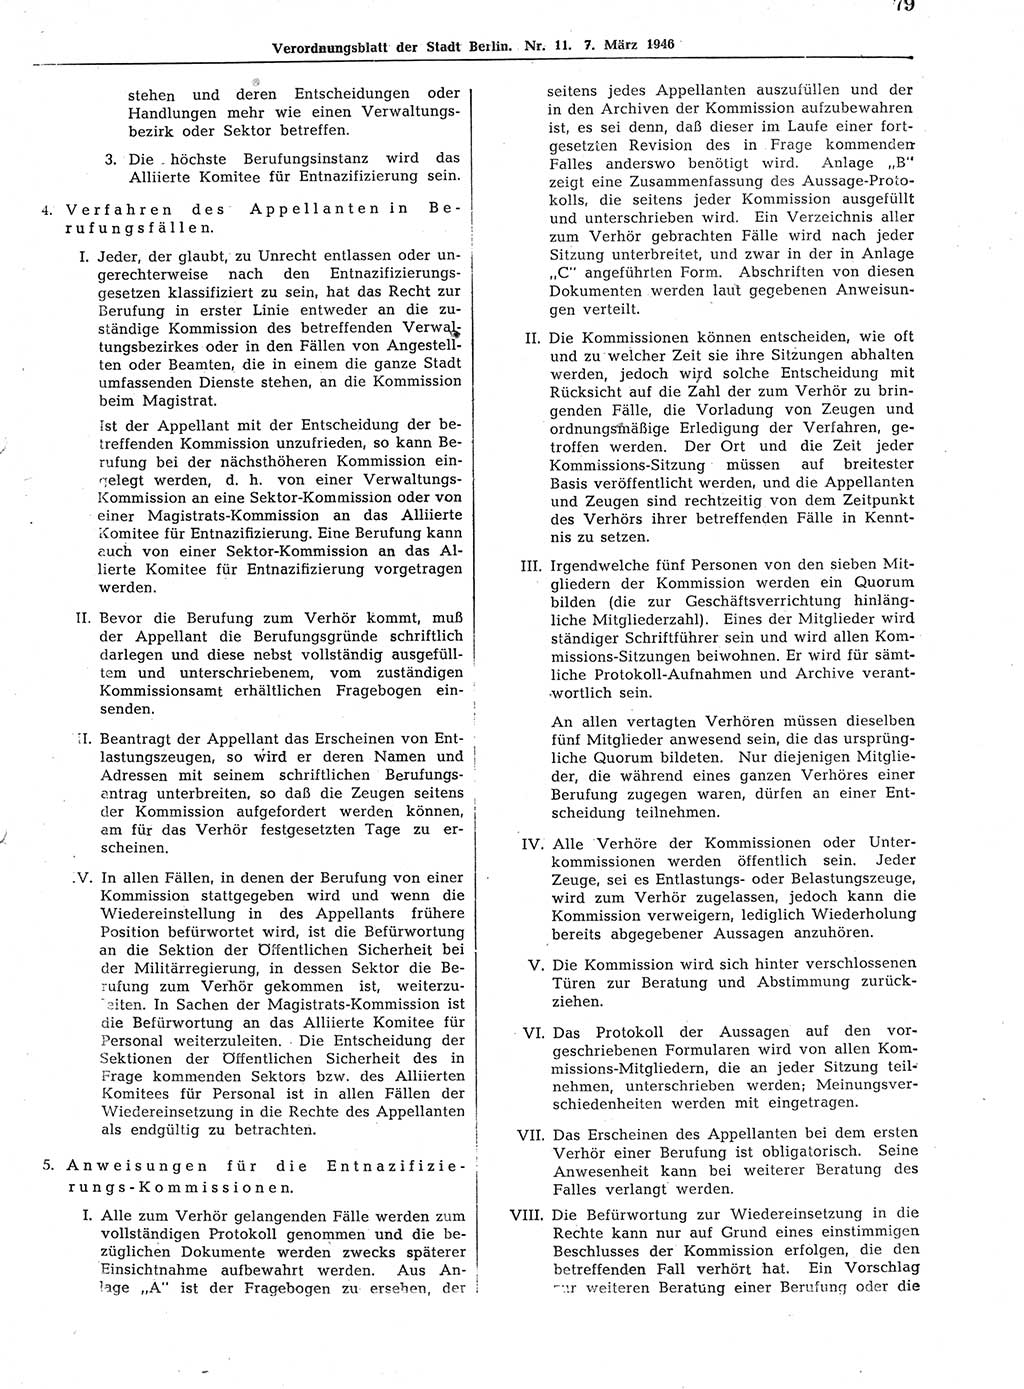 Verordnungsblatt (VOBl.) der Stadt Berlin, für Groß-Berlin 1946, Seite 79 (VOBl. Bln. 1946, S. 79)